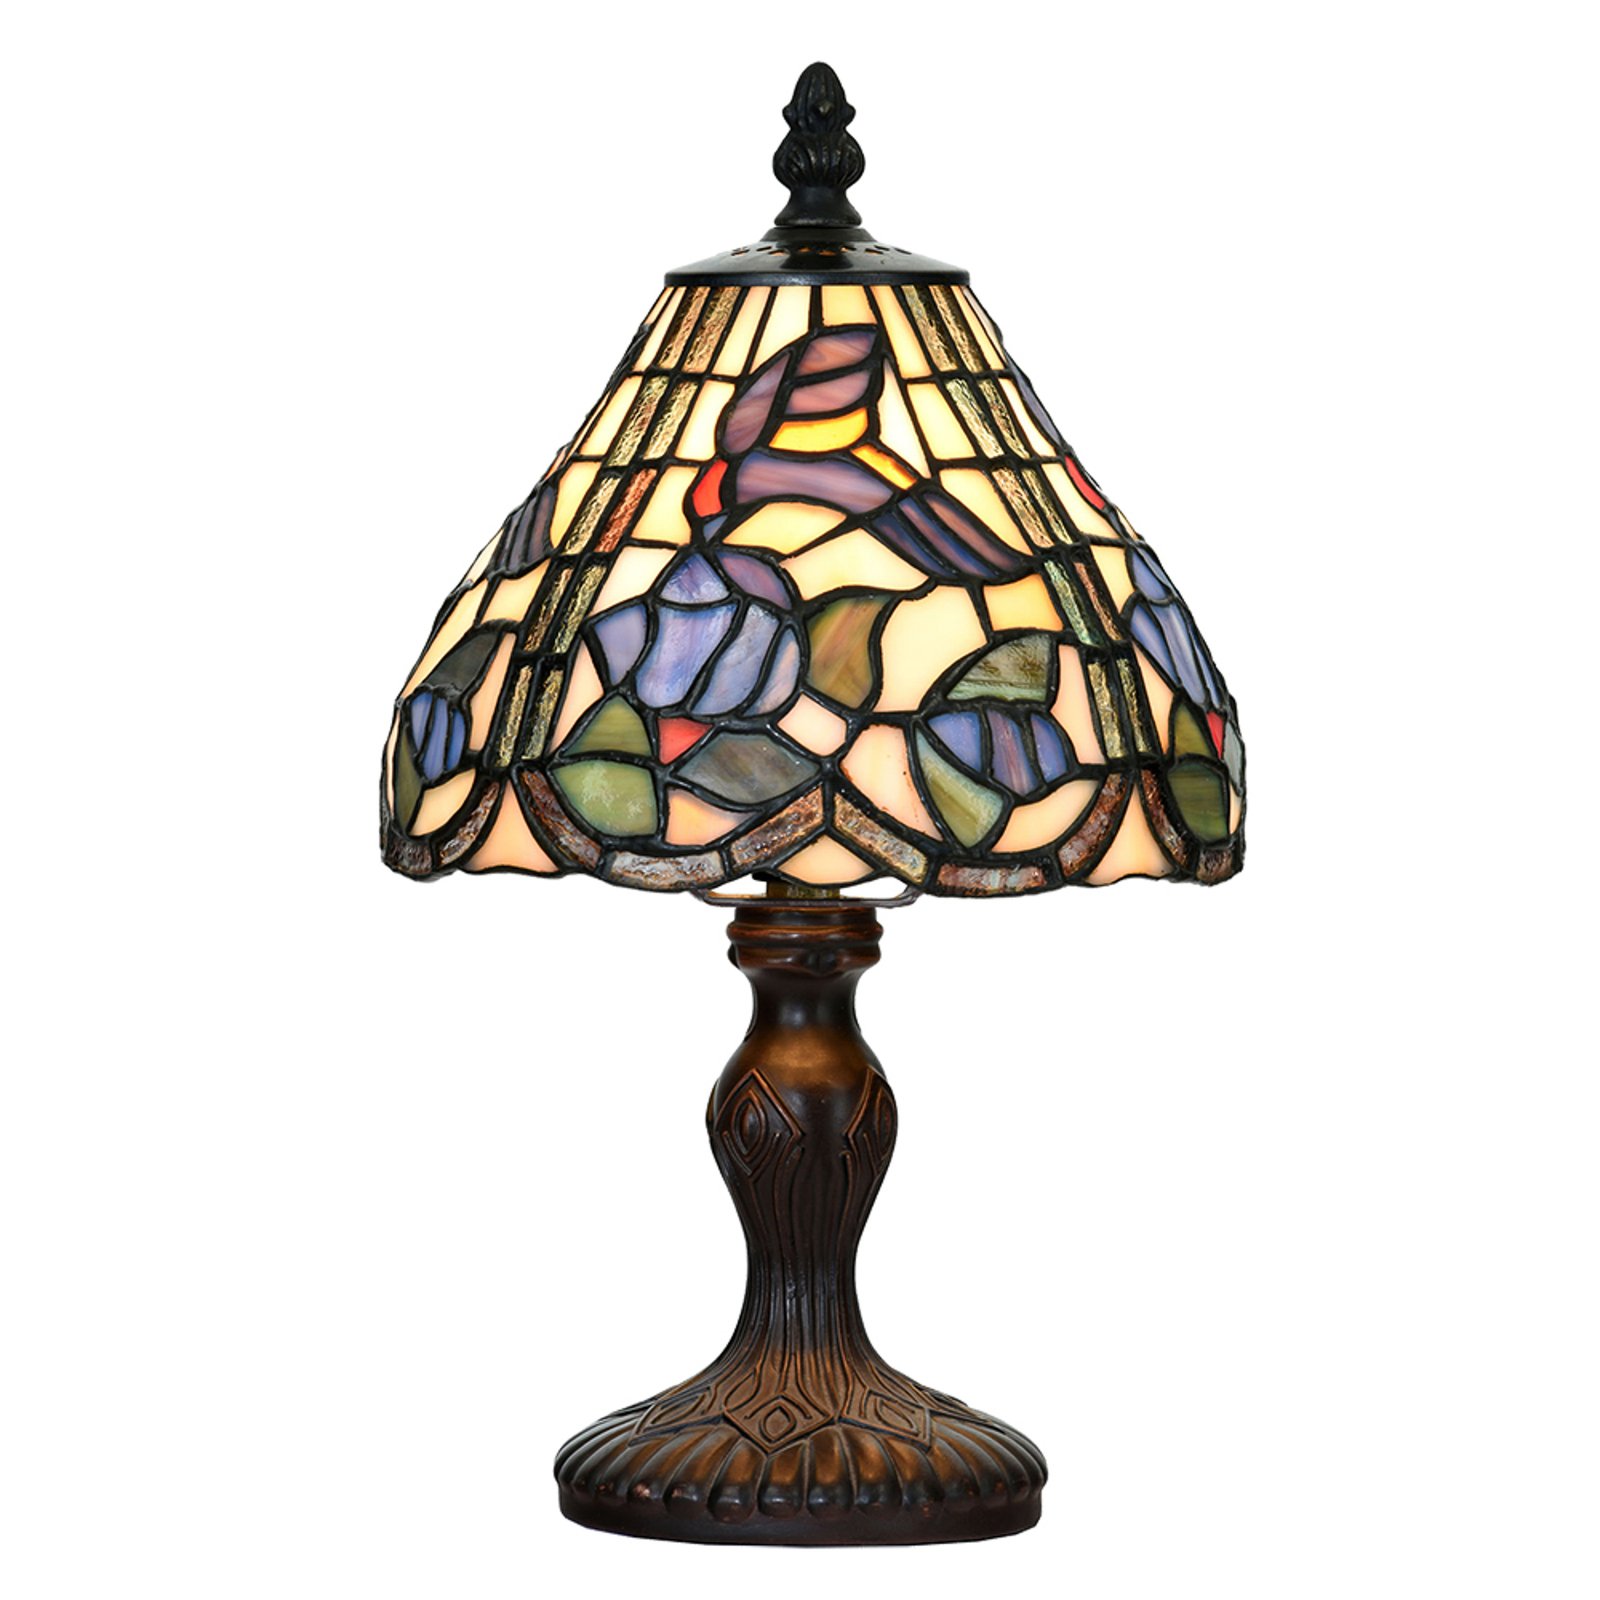 Tischlampe 5LL-6181 im Tiffany-Stil, Ø 18cm